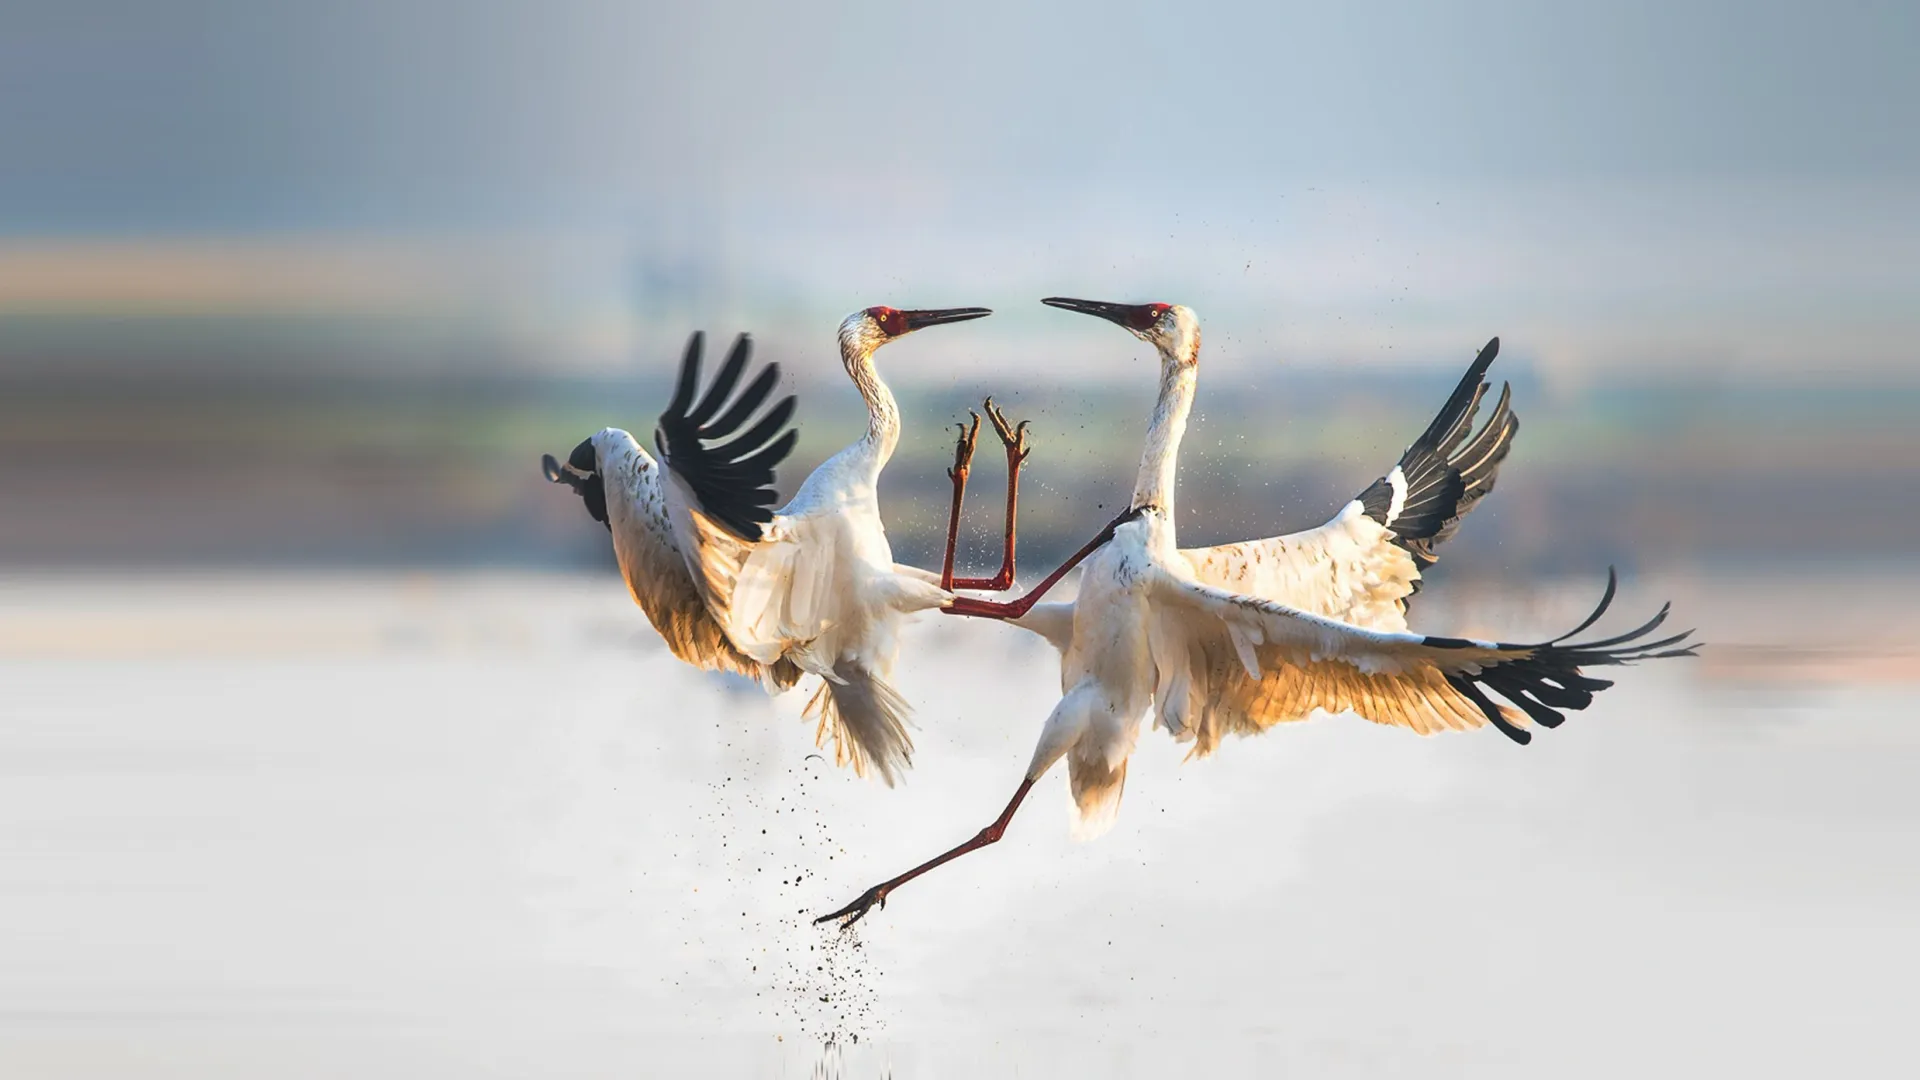 По прилетевшим птицам предсказывали погоду на год. Фото: Wang LiQiang/Shutterstock/Fotodom